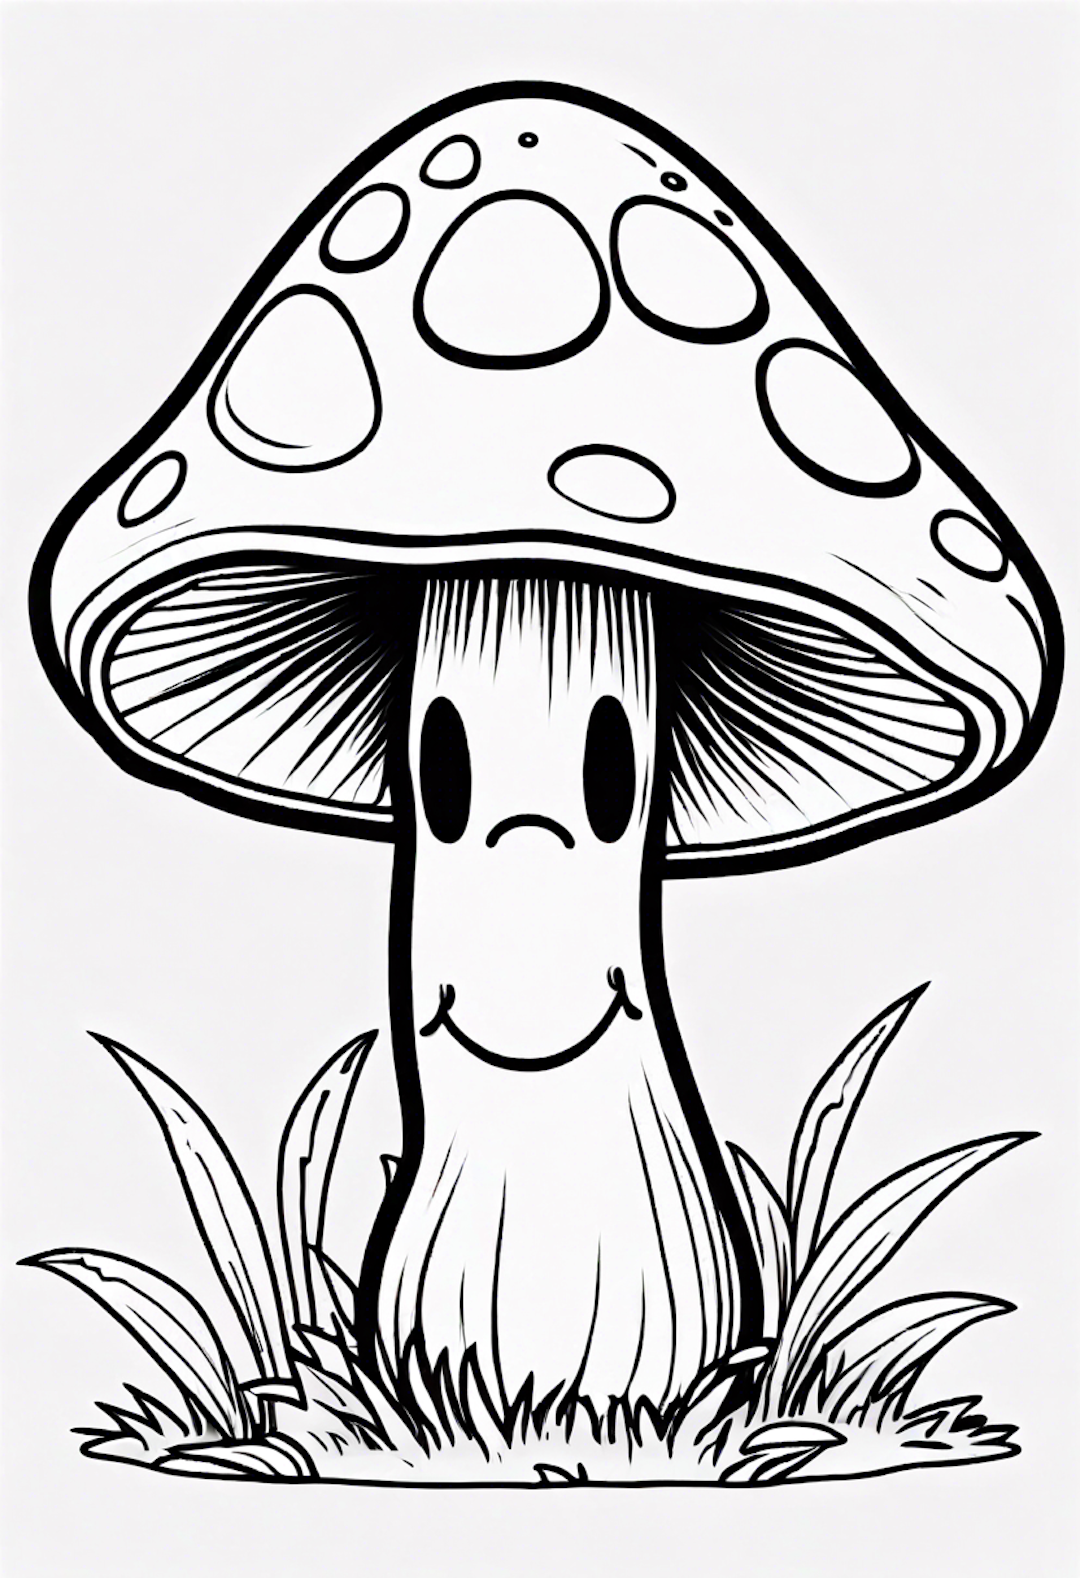 Cute Smiling Mushroom